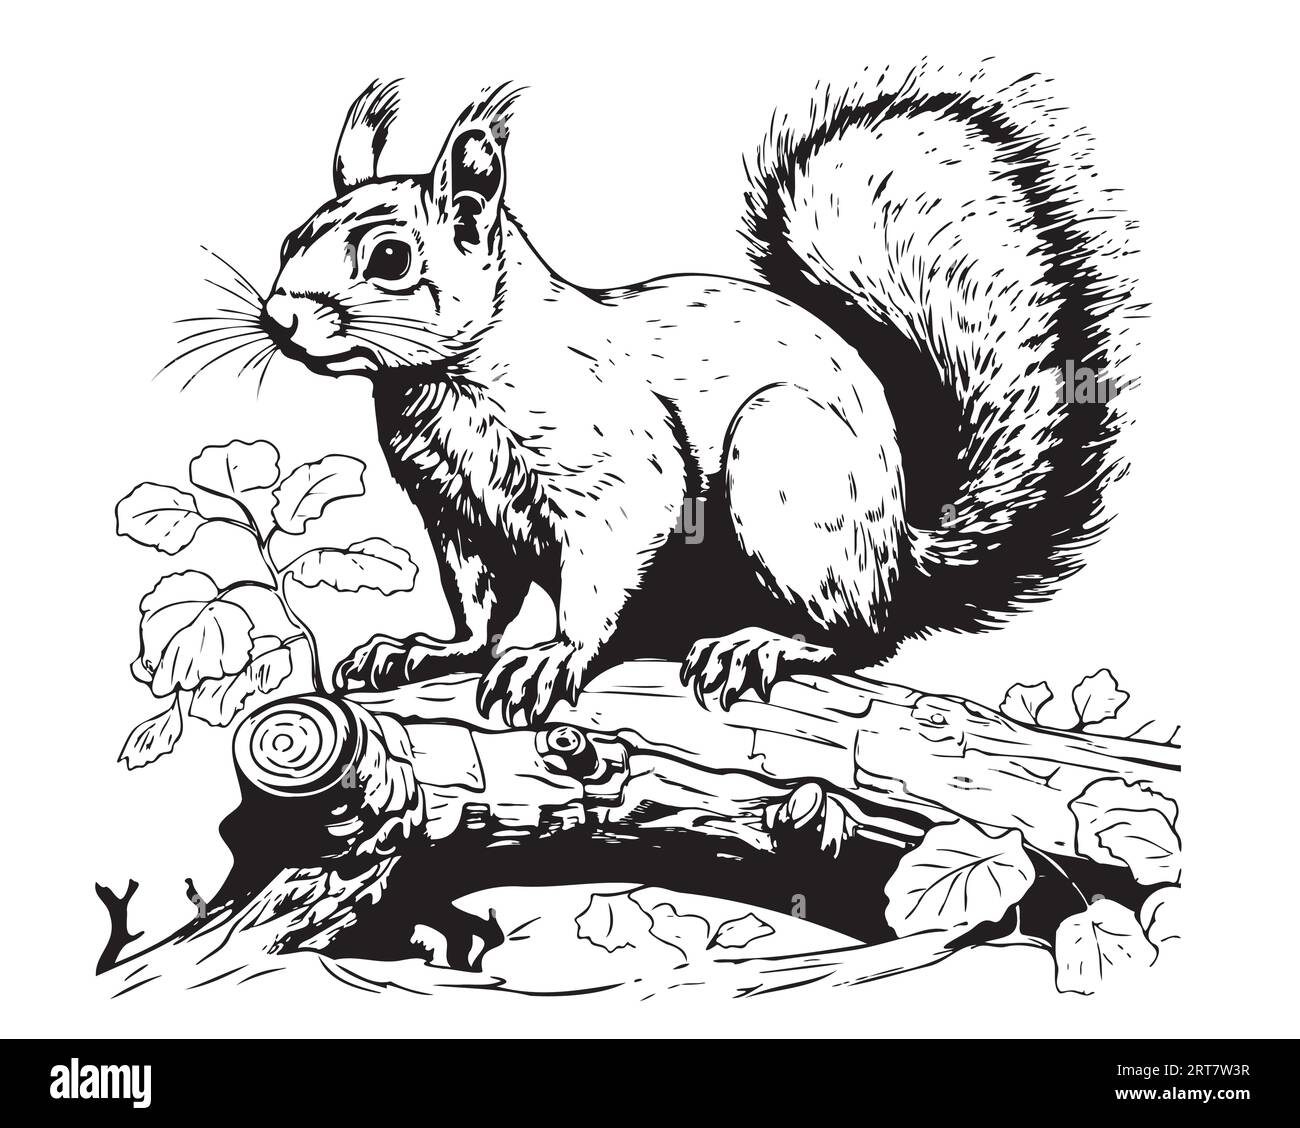 Eichhörnchen auf einer Baumskizze im handgemalten Grafikstil Vektor niedliche wilde Tiere Stock Vektor